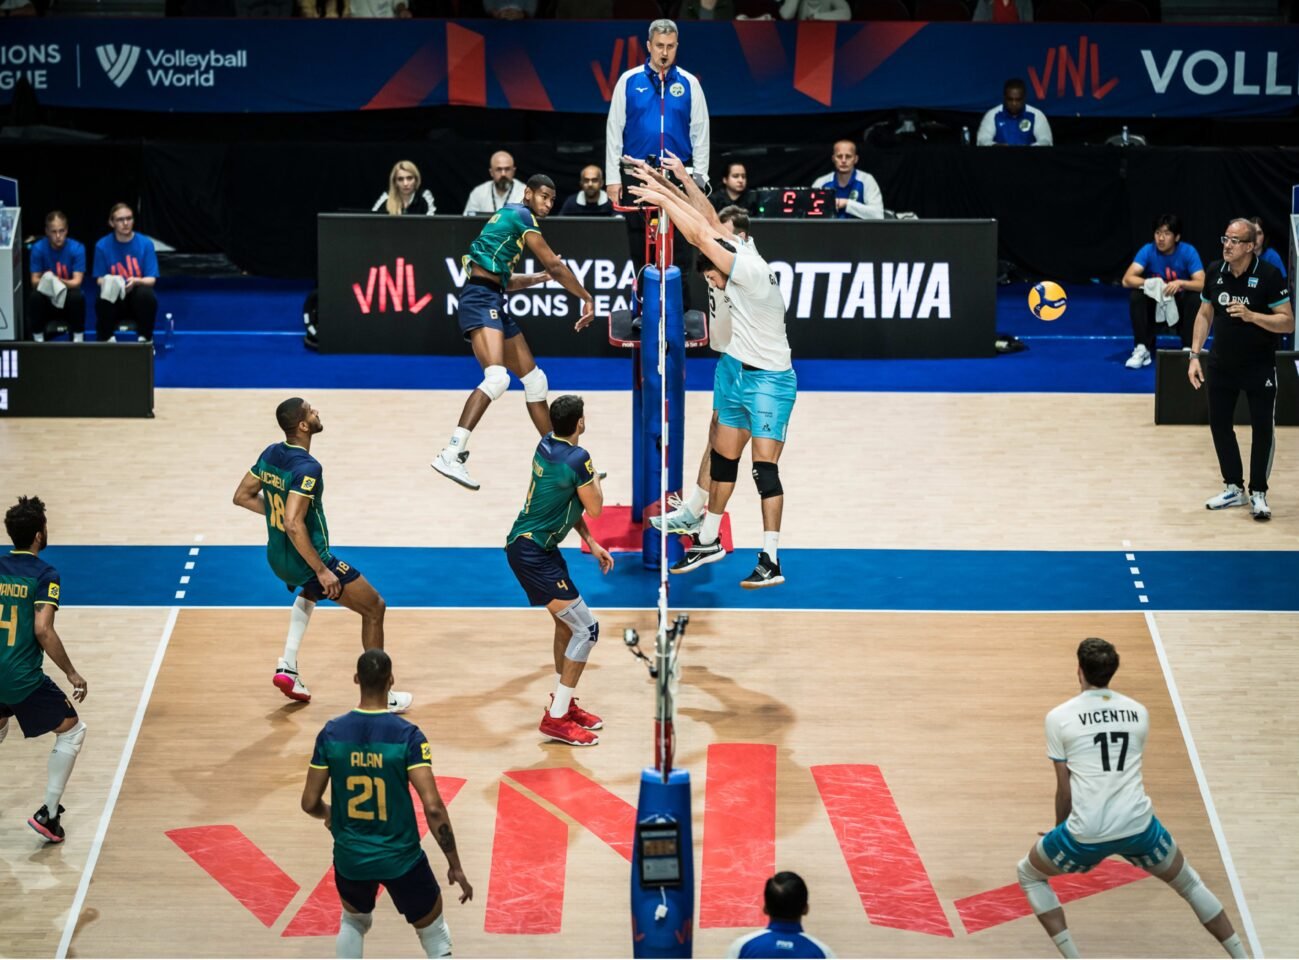 O Brasil venceu com muito sufoco da Argentina na Liga das Nações. Foto: Volleyball World